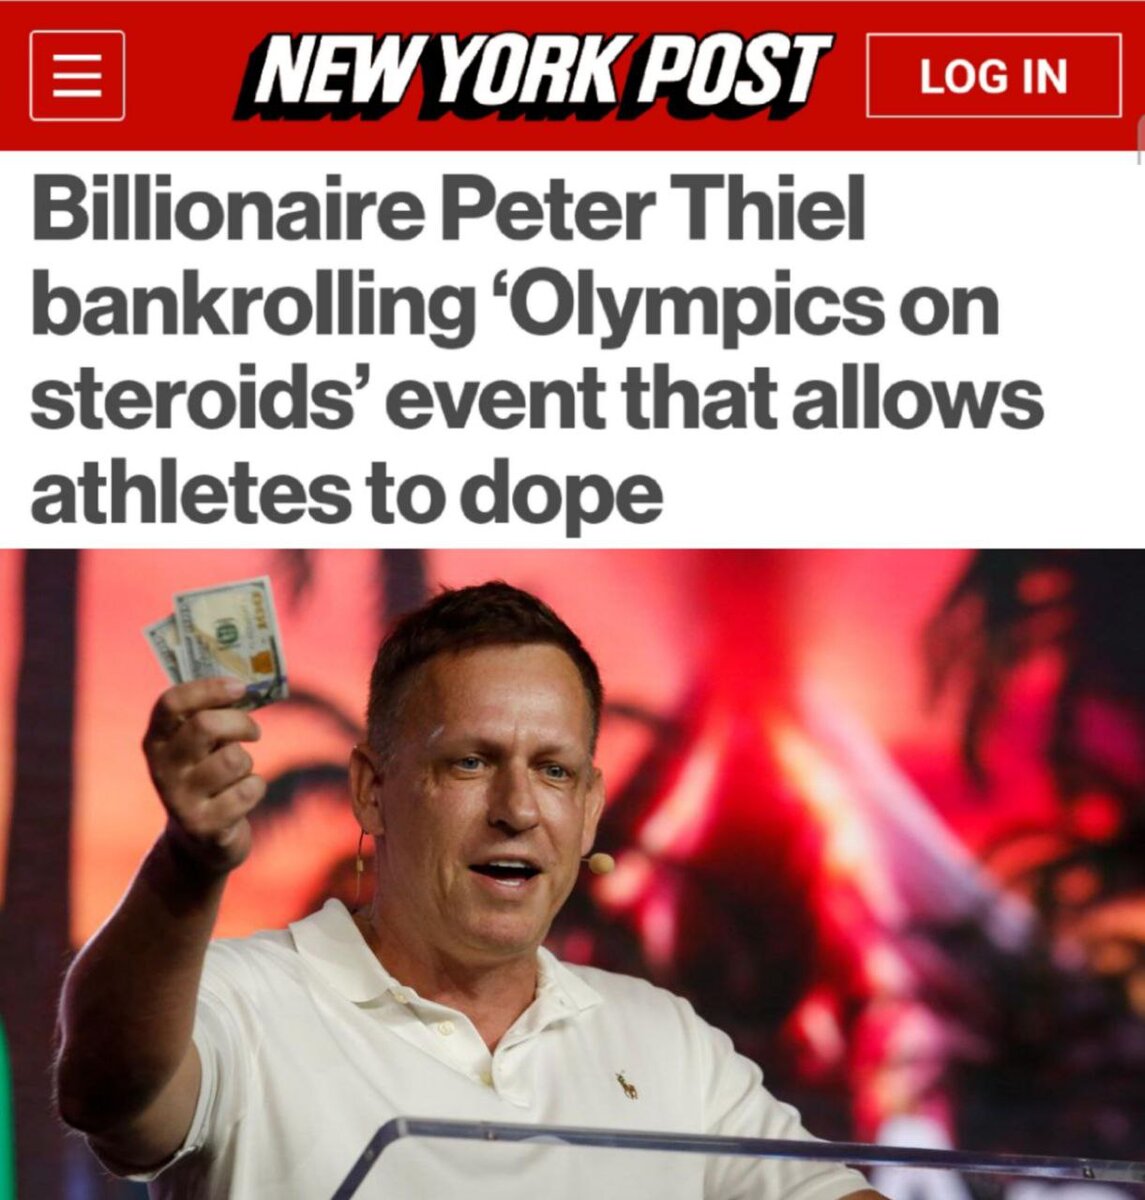 «Миллиардер Питер Тиль профинансирует «Олимпиаду на стероидах», позволяющую спортсменам принимать допинг»: В условиях тирании WADA маятник большого спорта ожидаемого качнулся в другую сторону - туда,